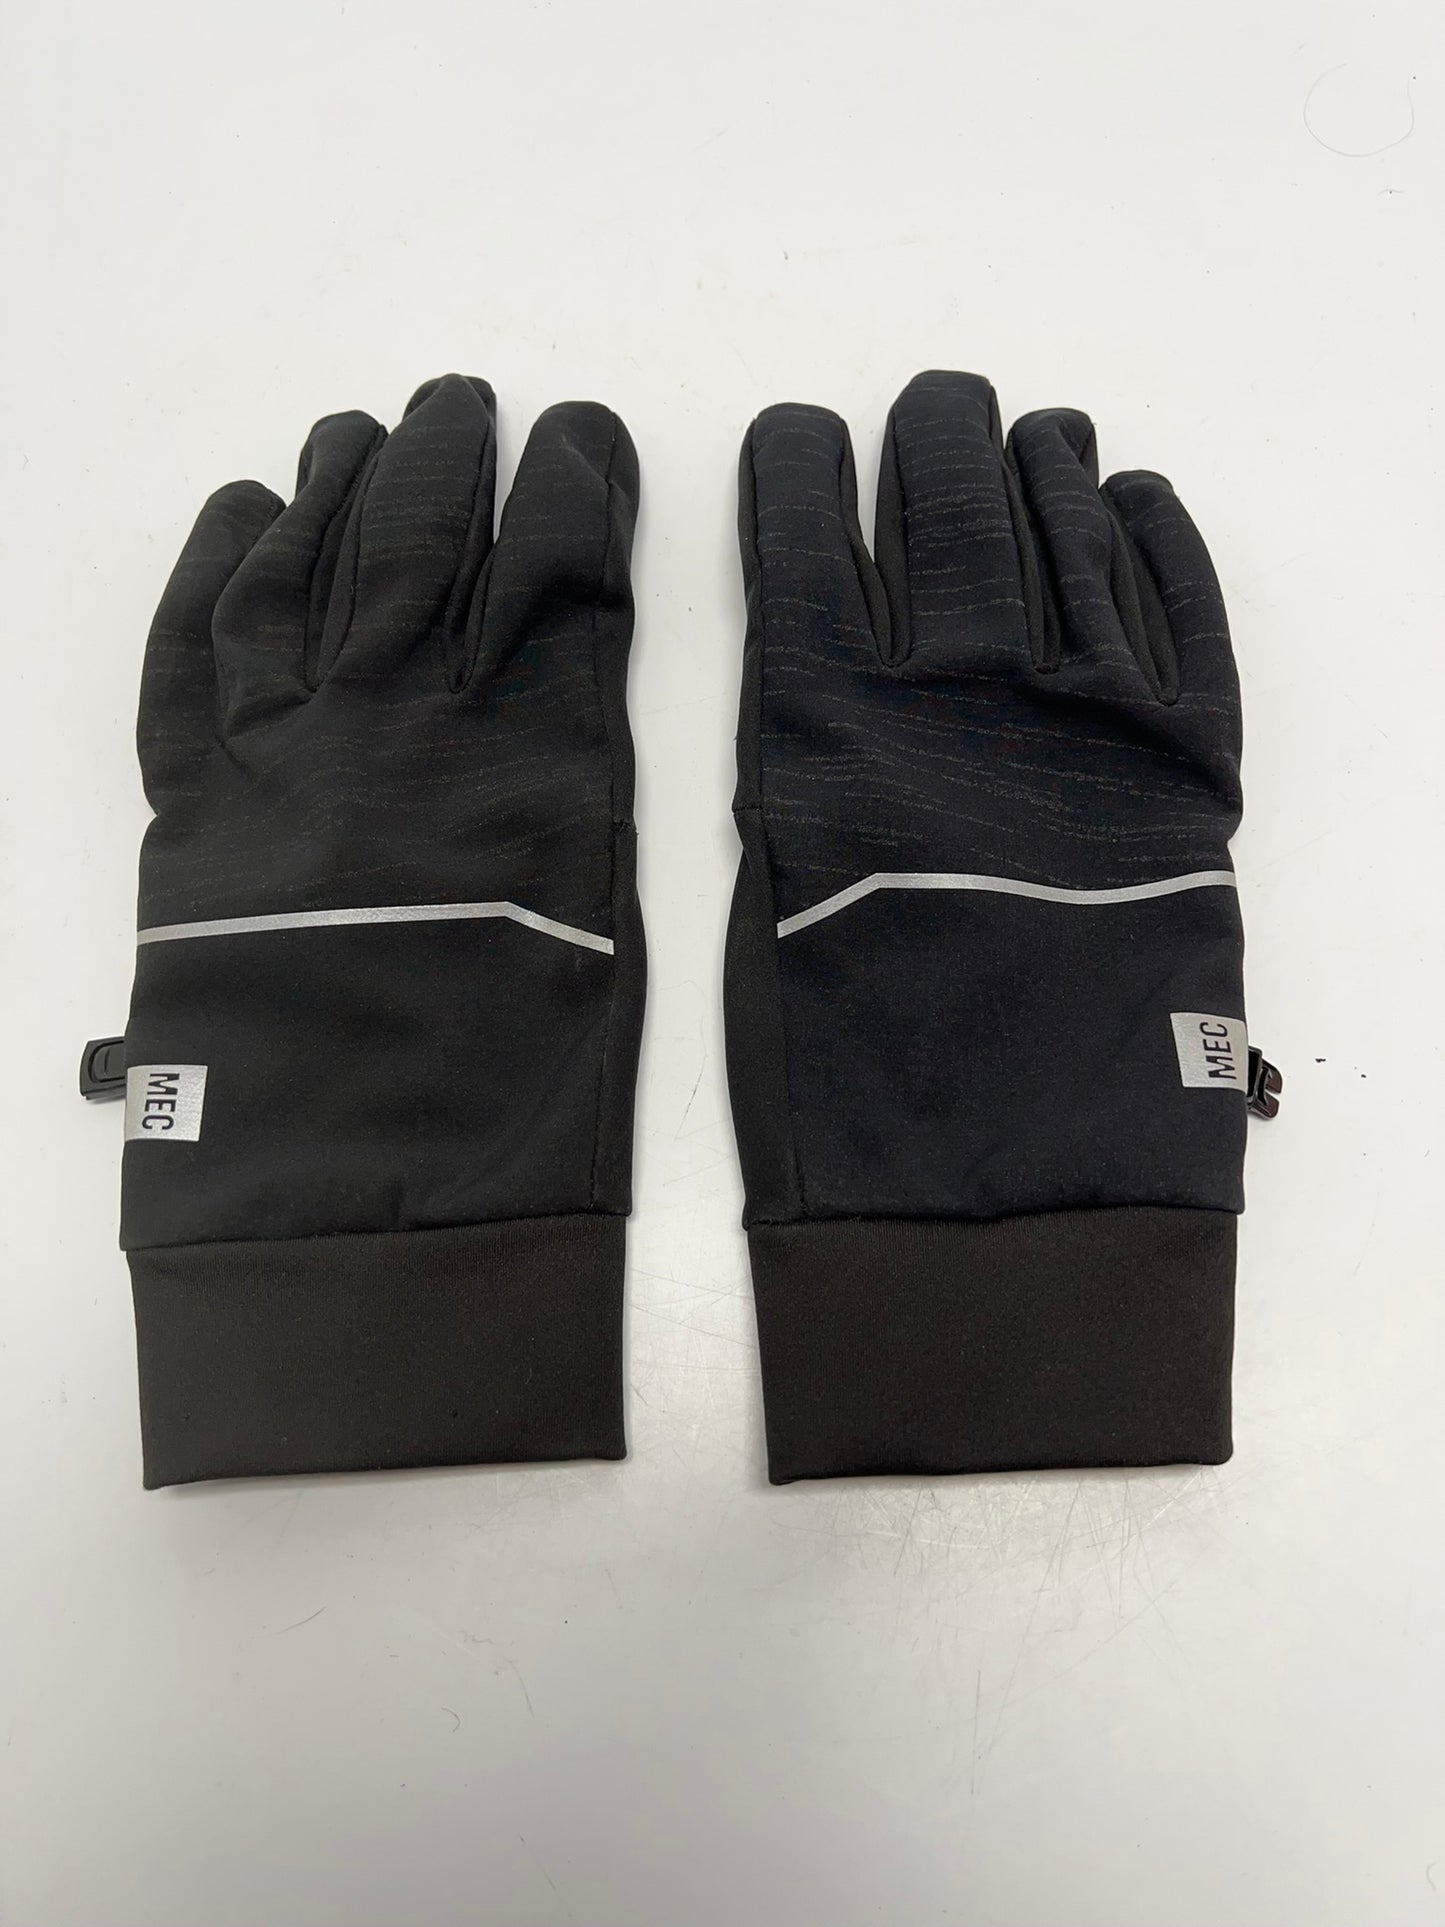 MEC Men's Large Fall Bike Gloves As New